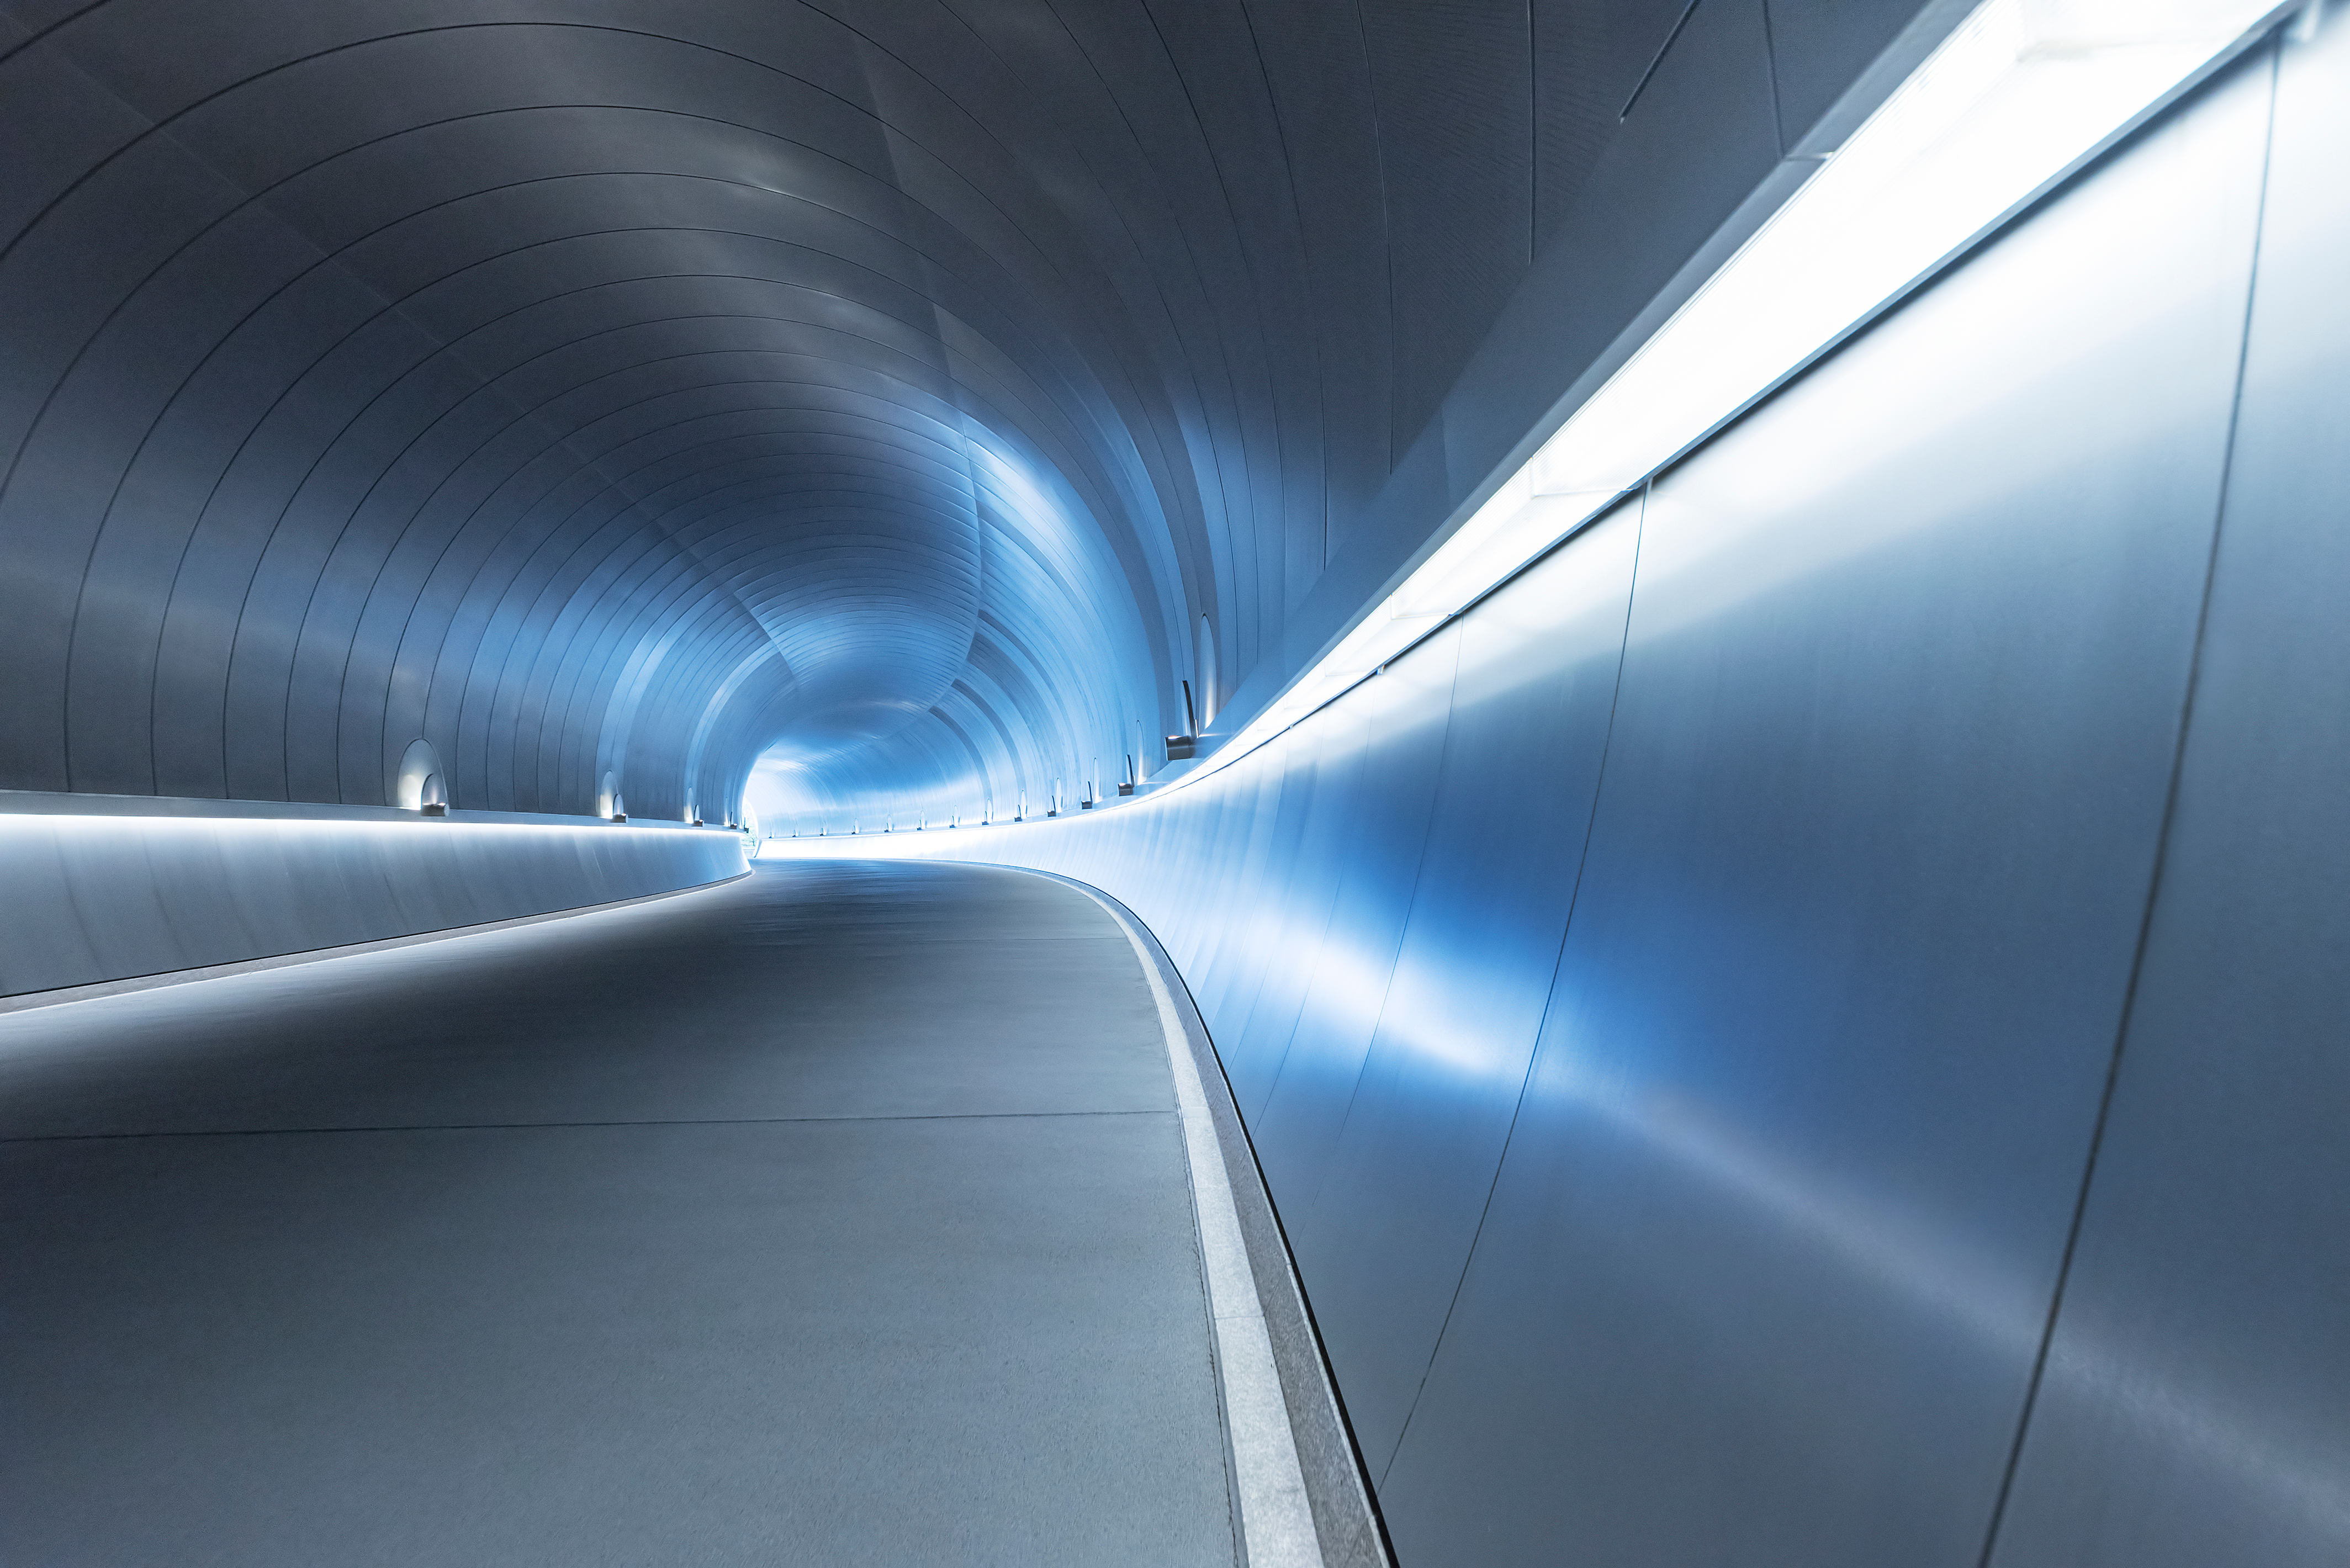 COMMS_Future Trends_Futuristic tunnel_Jan 21